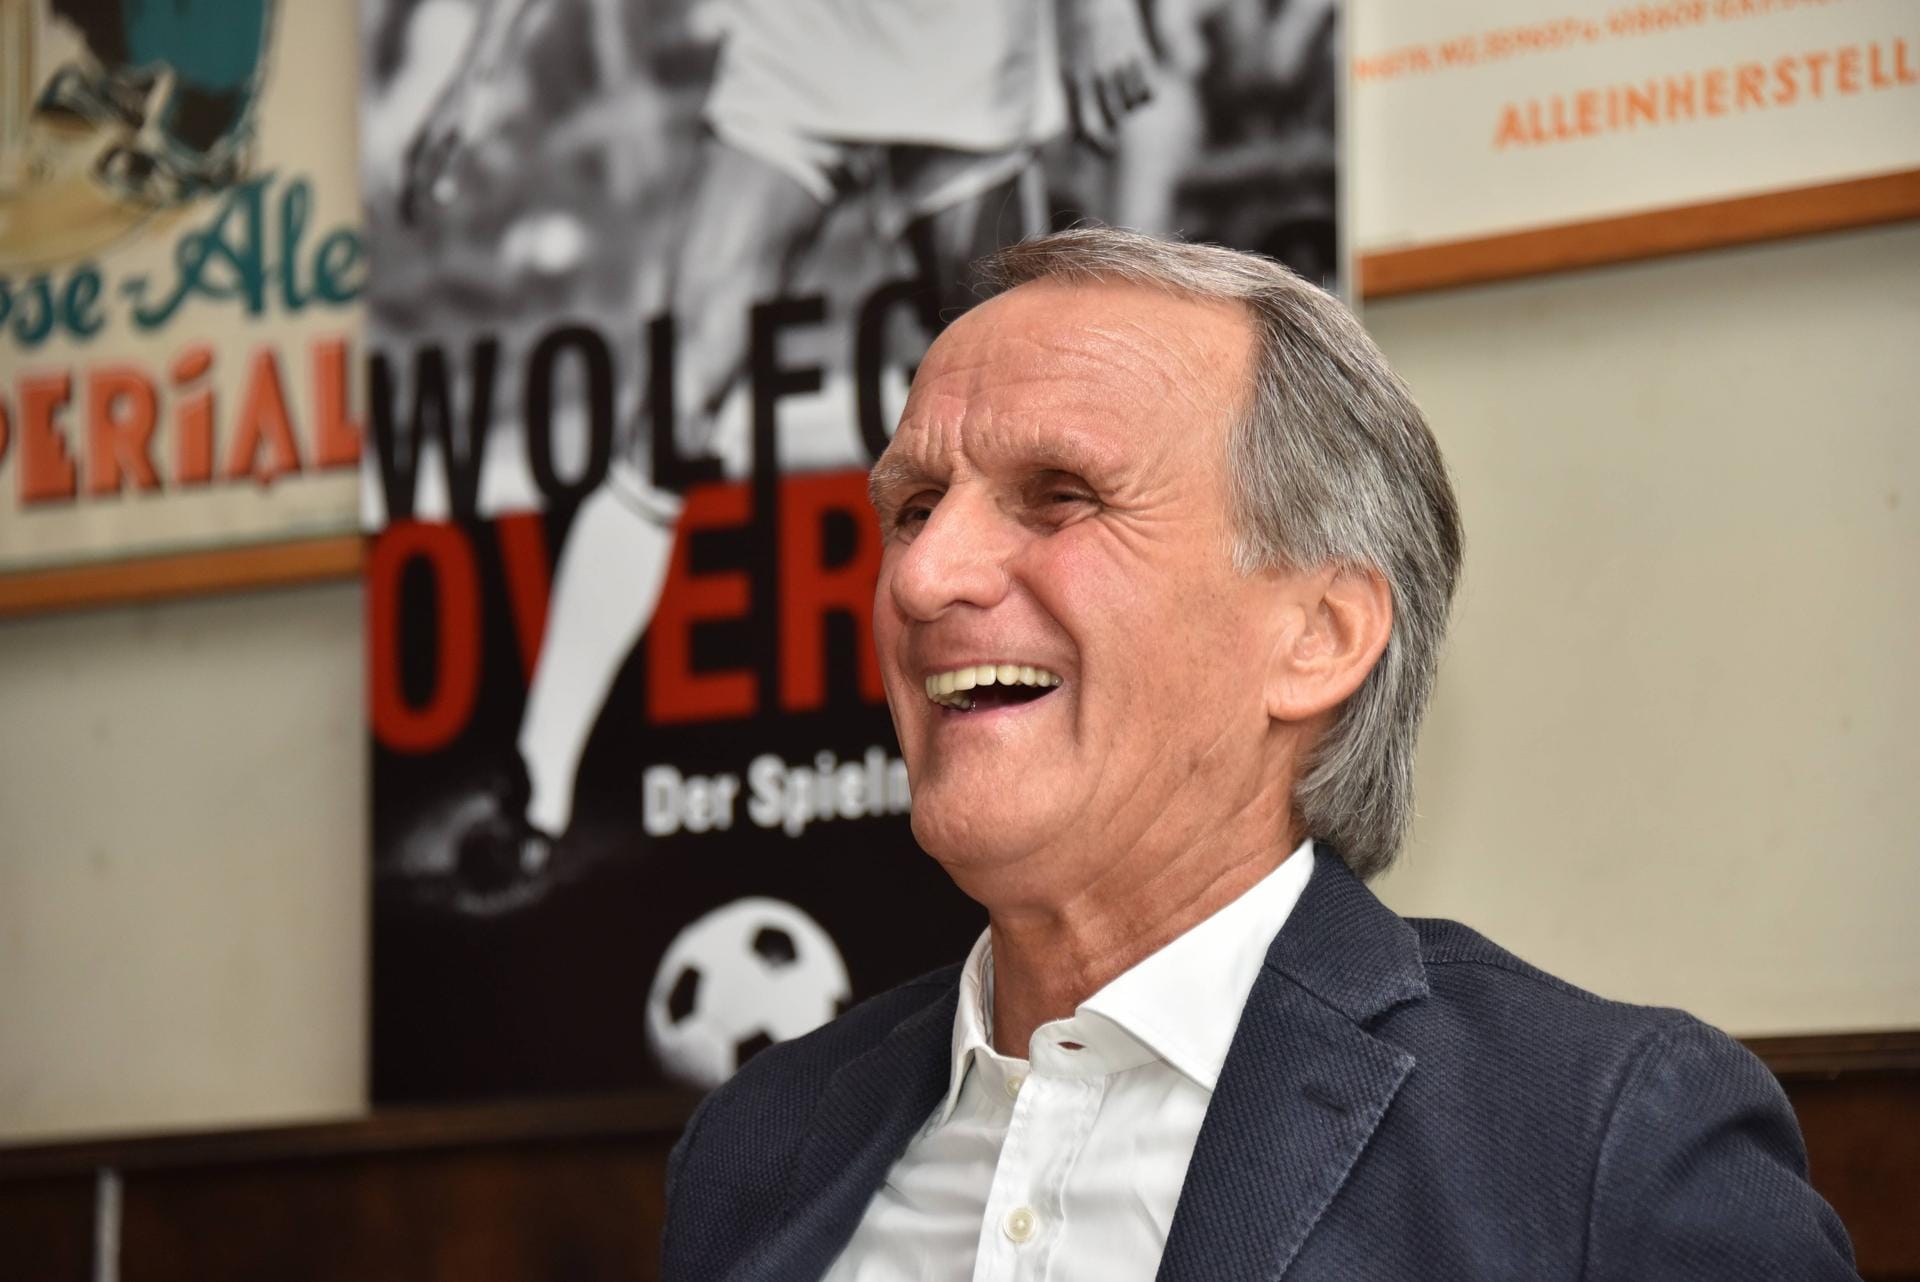 1974er-Weltmeister Wolfgang Overath: "Ich sehe den FC Bayern leicht im Vorteil, weil sie zuhause spielen und ihnen wohl schon ein Unentschieden reichen würde. Allerdings haben die letzten Wochen, vor allem in der Champions League, gezeigt, dass im Fußball alles möglich ist - deshalb kann ich keine definitive Prognose treffen. Beide Teams hätten es aufgrund ihrer Leistungen verdient."